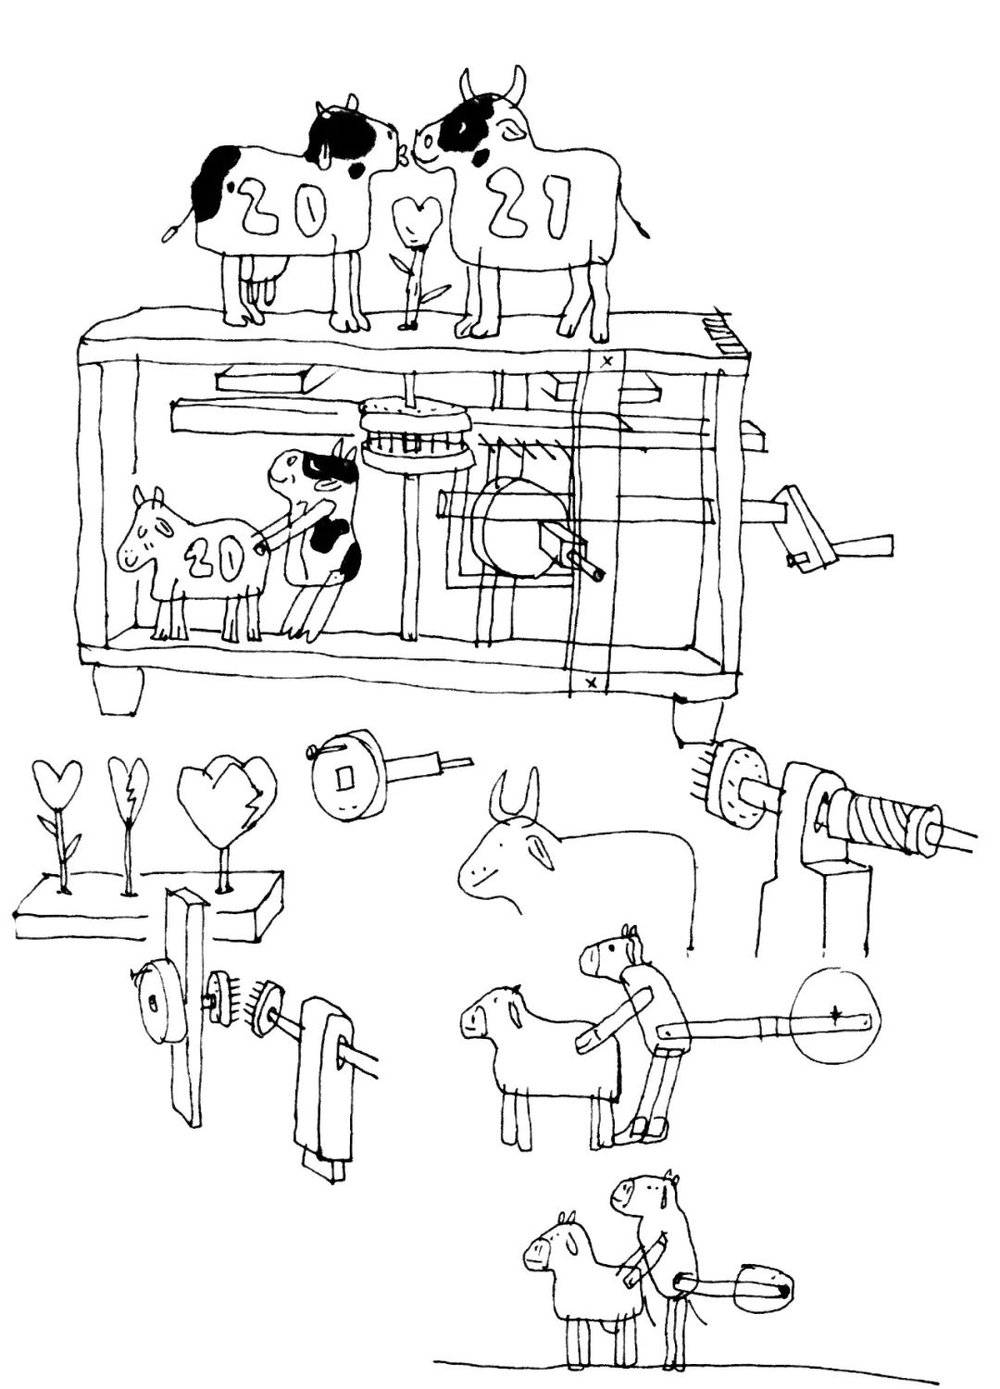 《对牛谈情》设计草图<br>